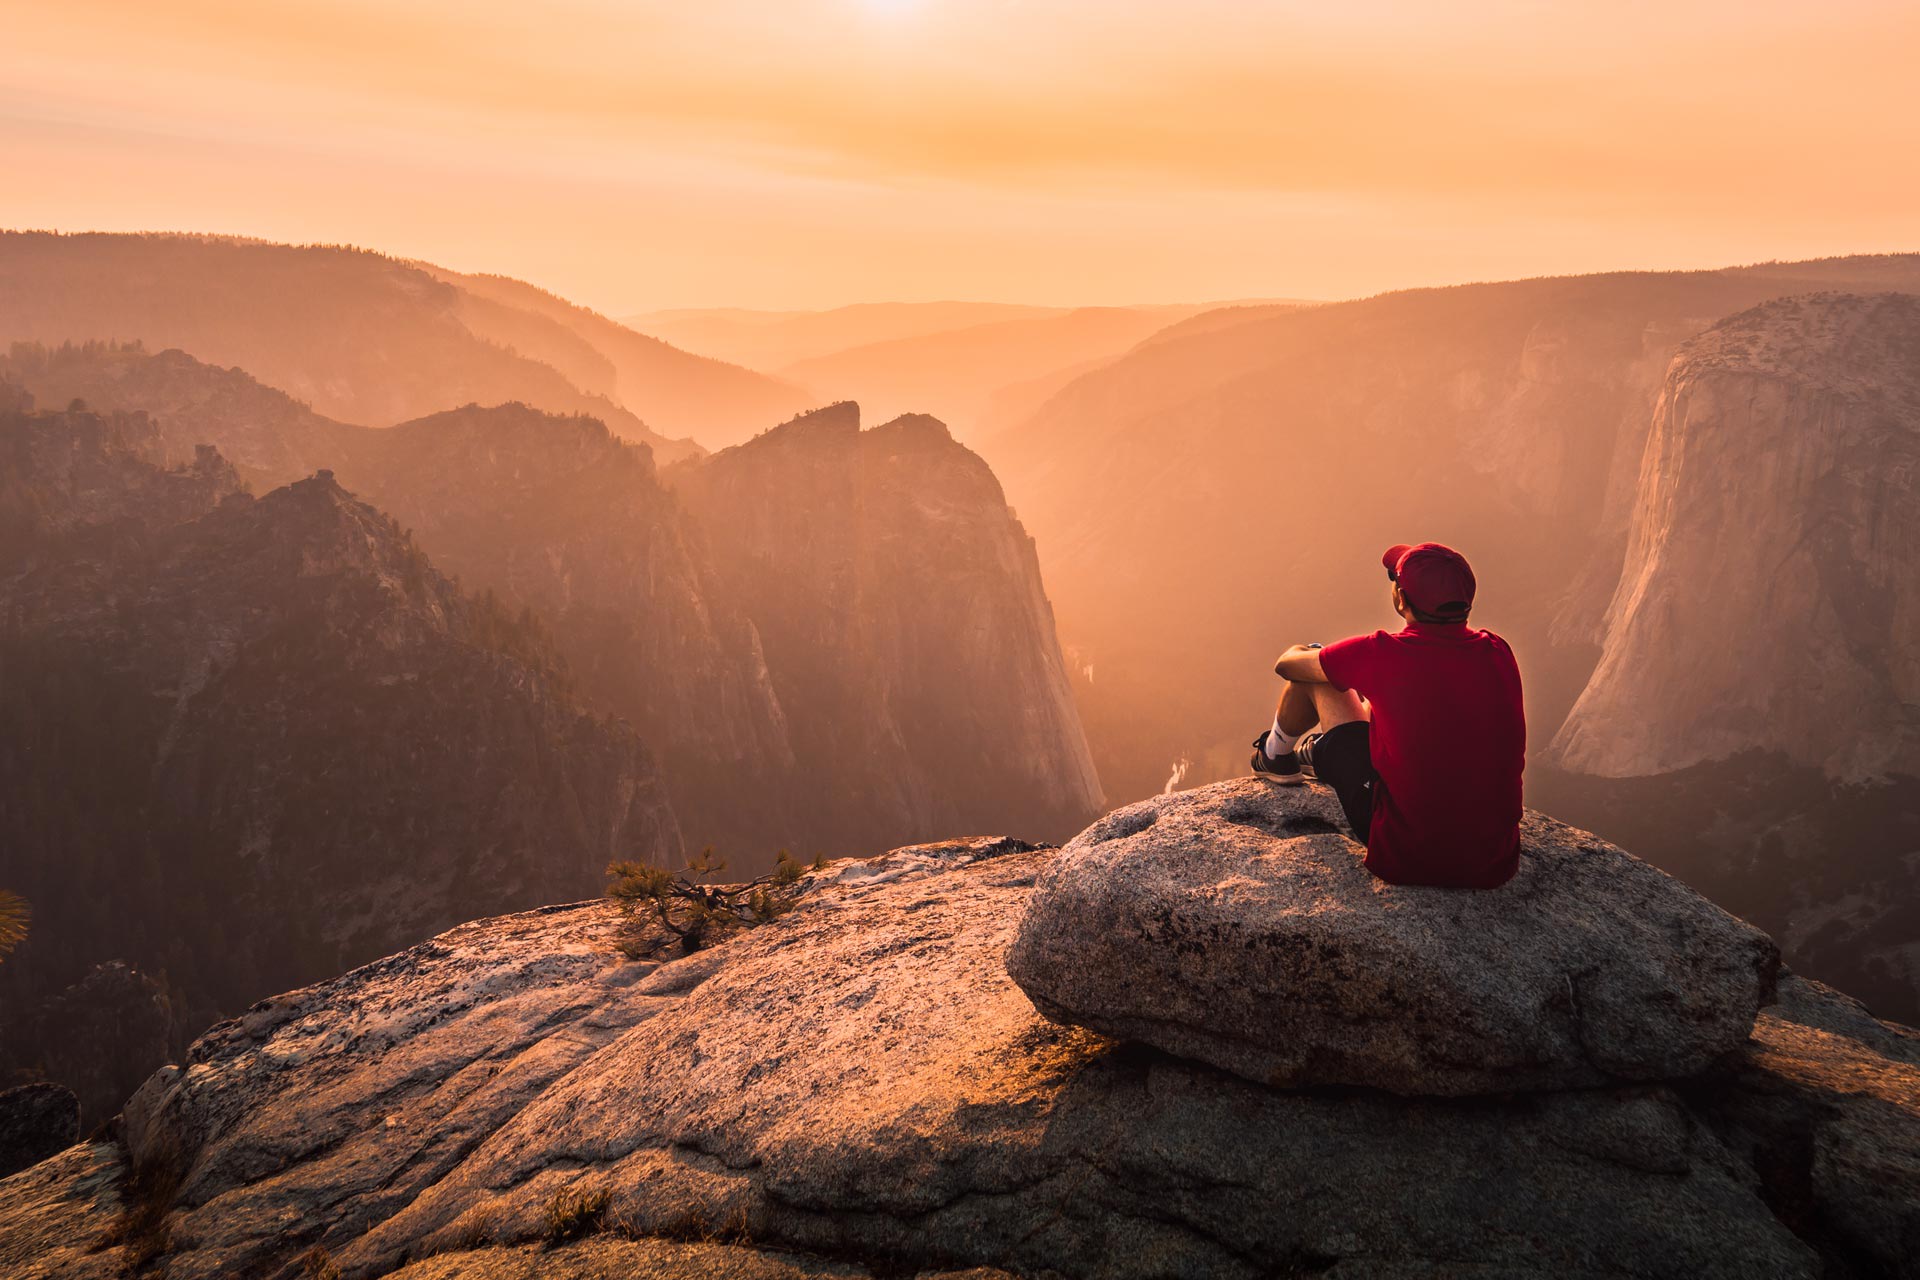  Un uomo con una cuffia rossa è seduto su un affaccio roccioso e guarda il tramonto.